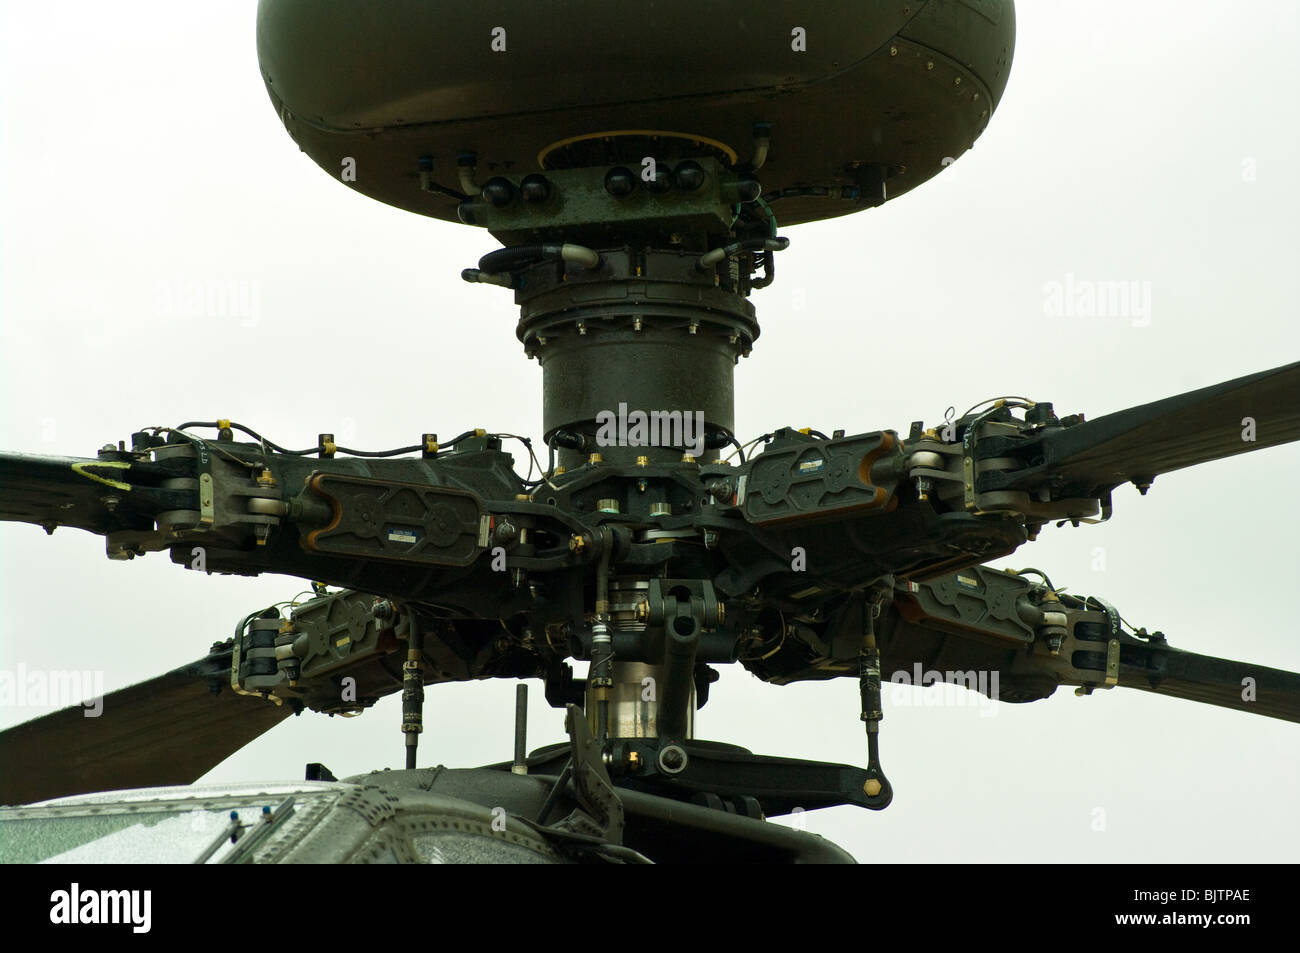 El conjunto del rotor de un helicóptero de ataque del ejército británico Westland WAH-64 Apache MK1 el arco Foto de stock